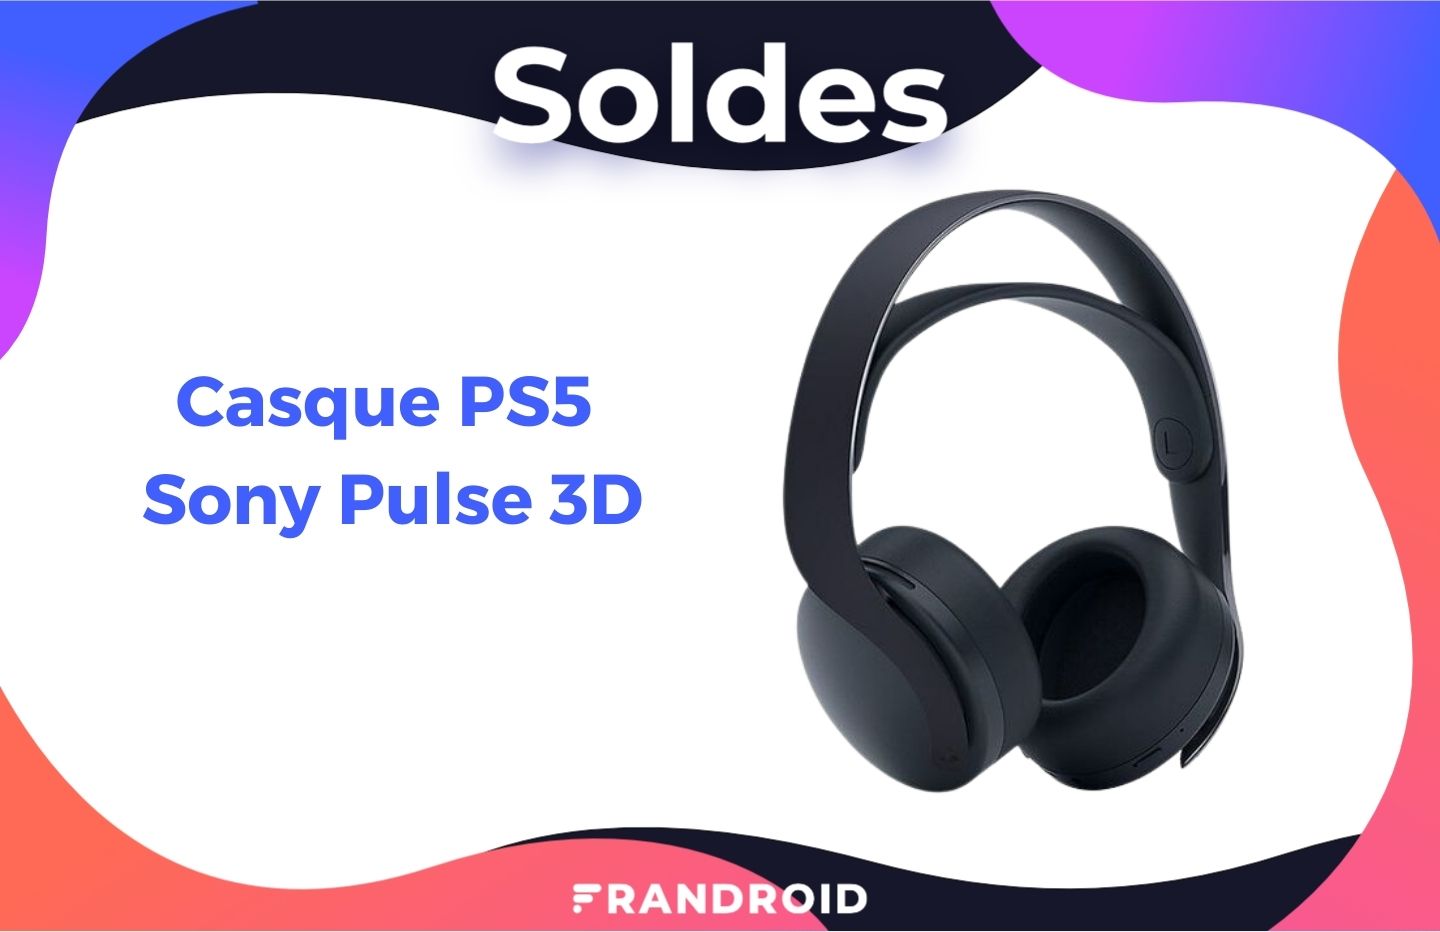 Le prix du casque Sony Pulse 3D de la PS5 est en baisse durant les